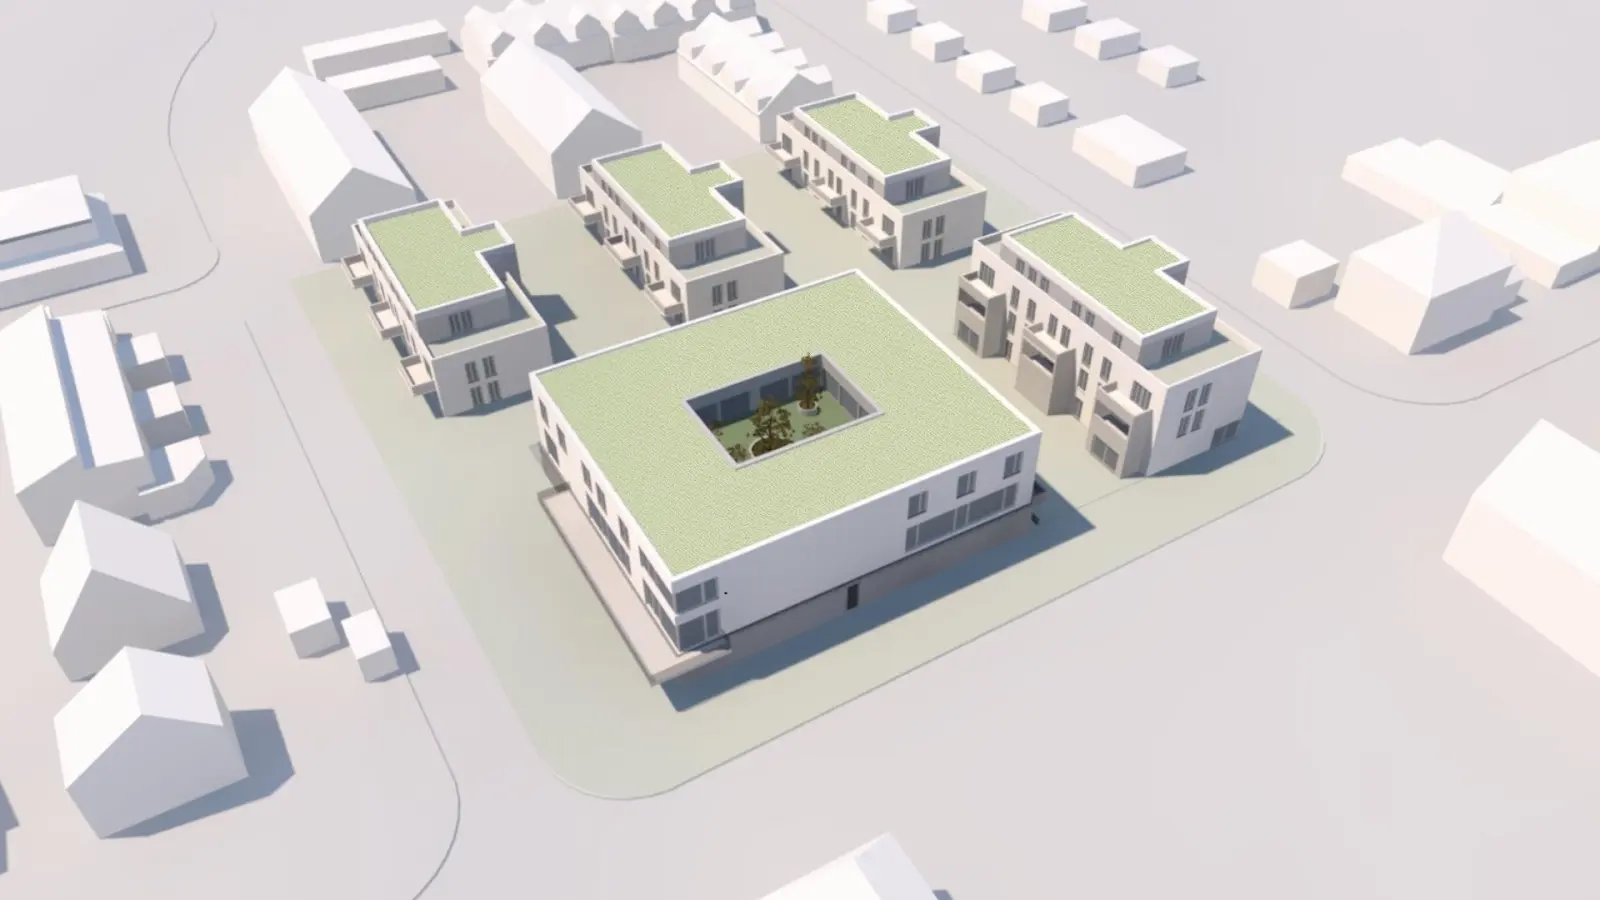 Entwurf der Judohalle mit umliegender Wohnbebauung. (Grafik: Seidel Architekten)